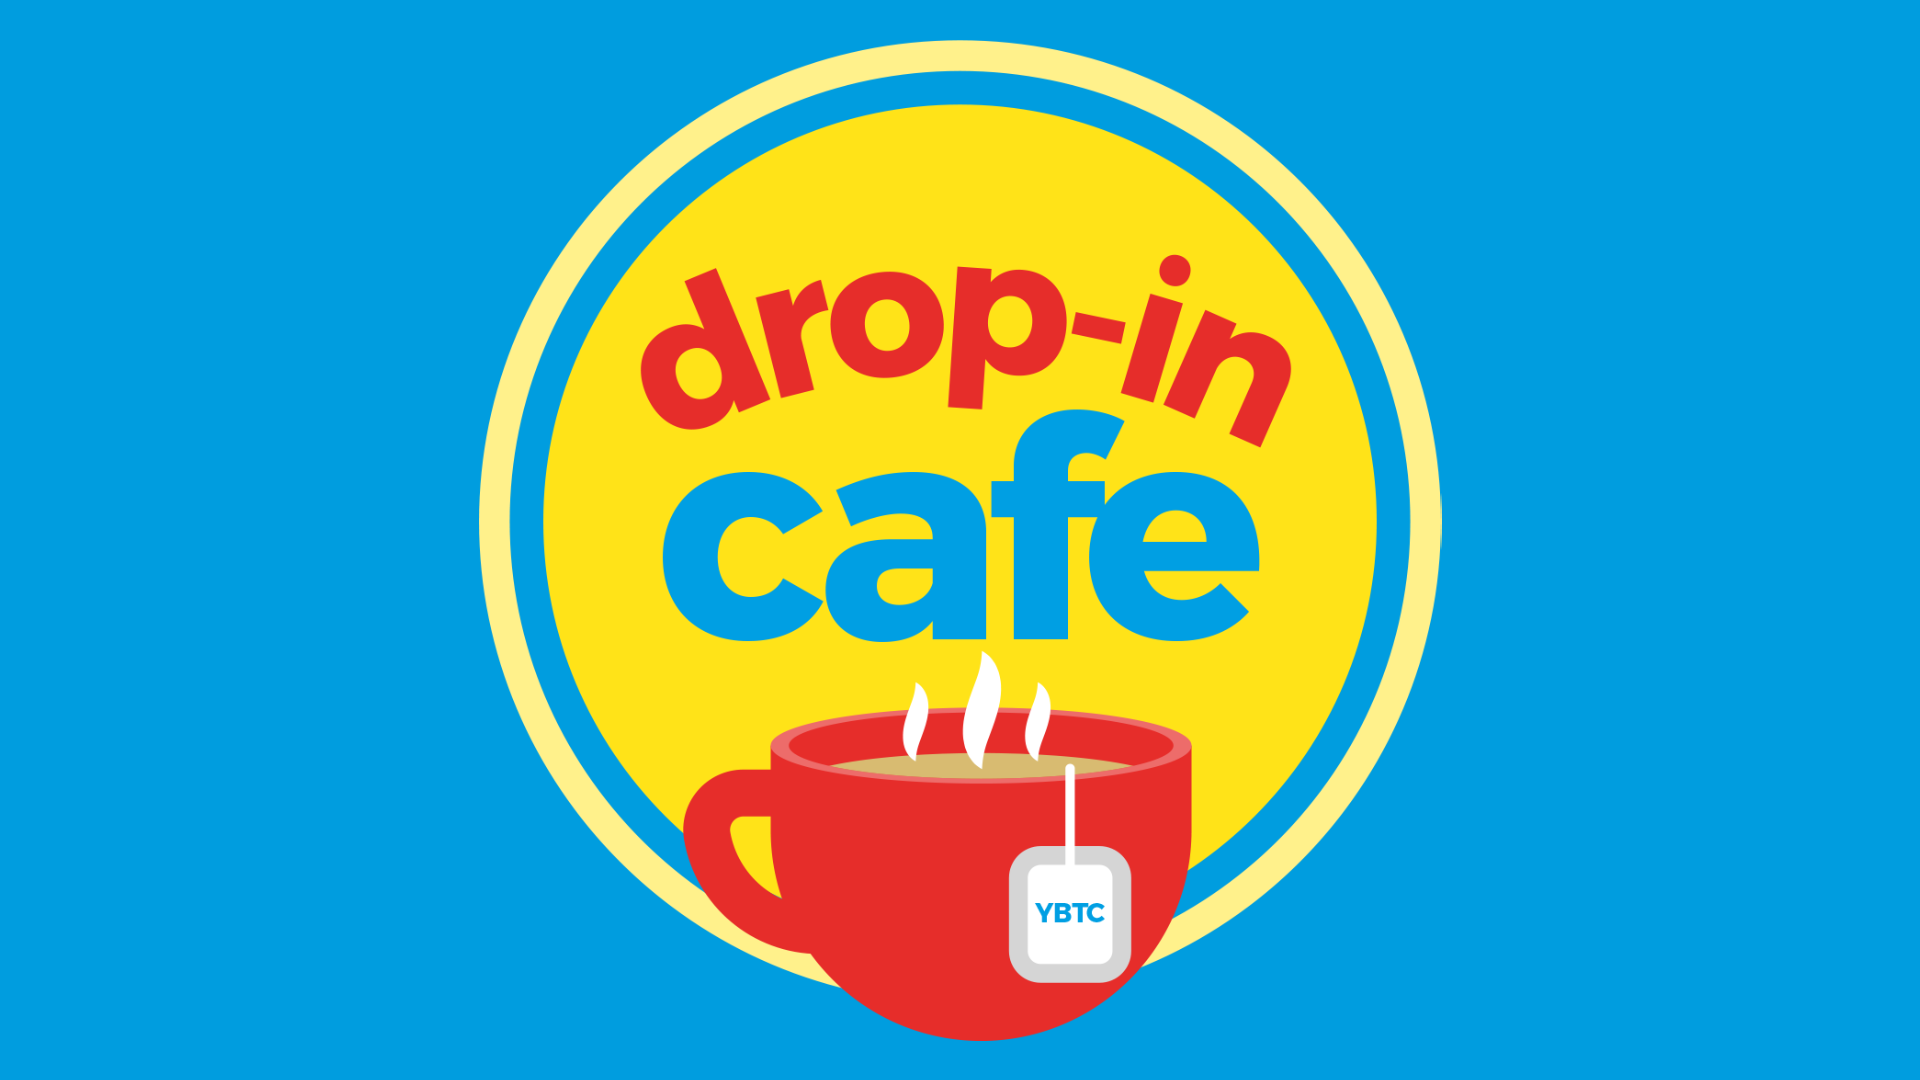 East Leeds Drop-In Café